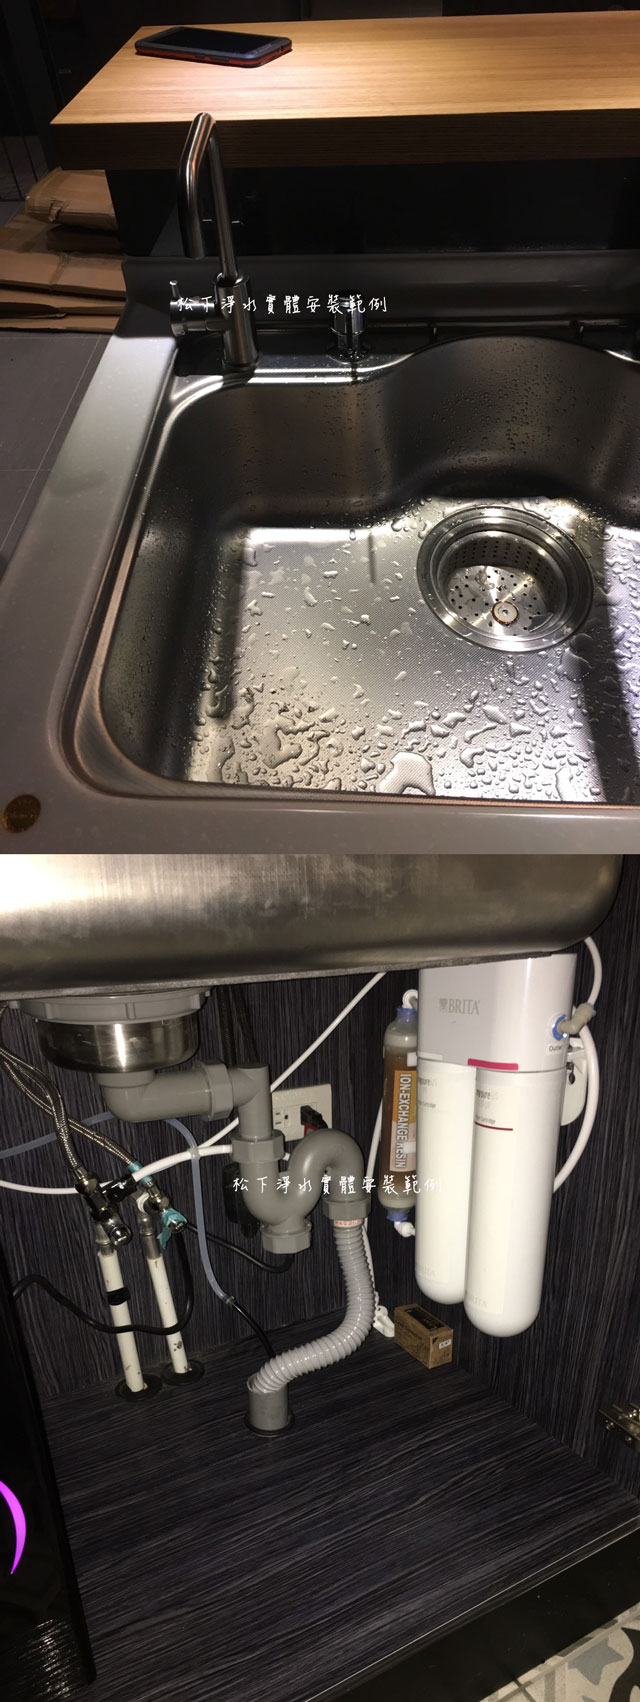 ep-168廚下型冷熱飲水機